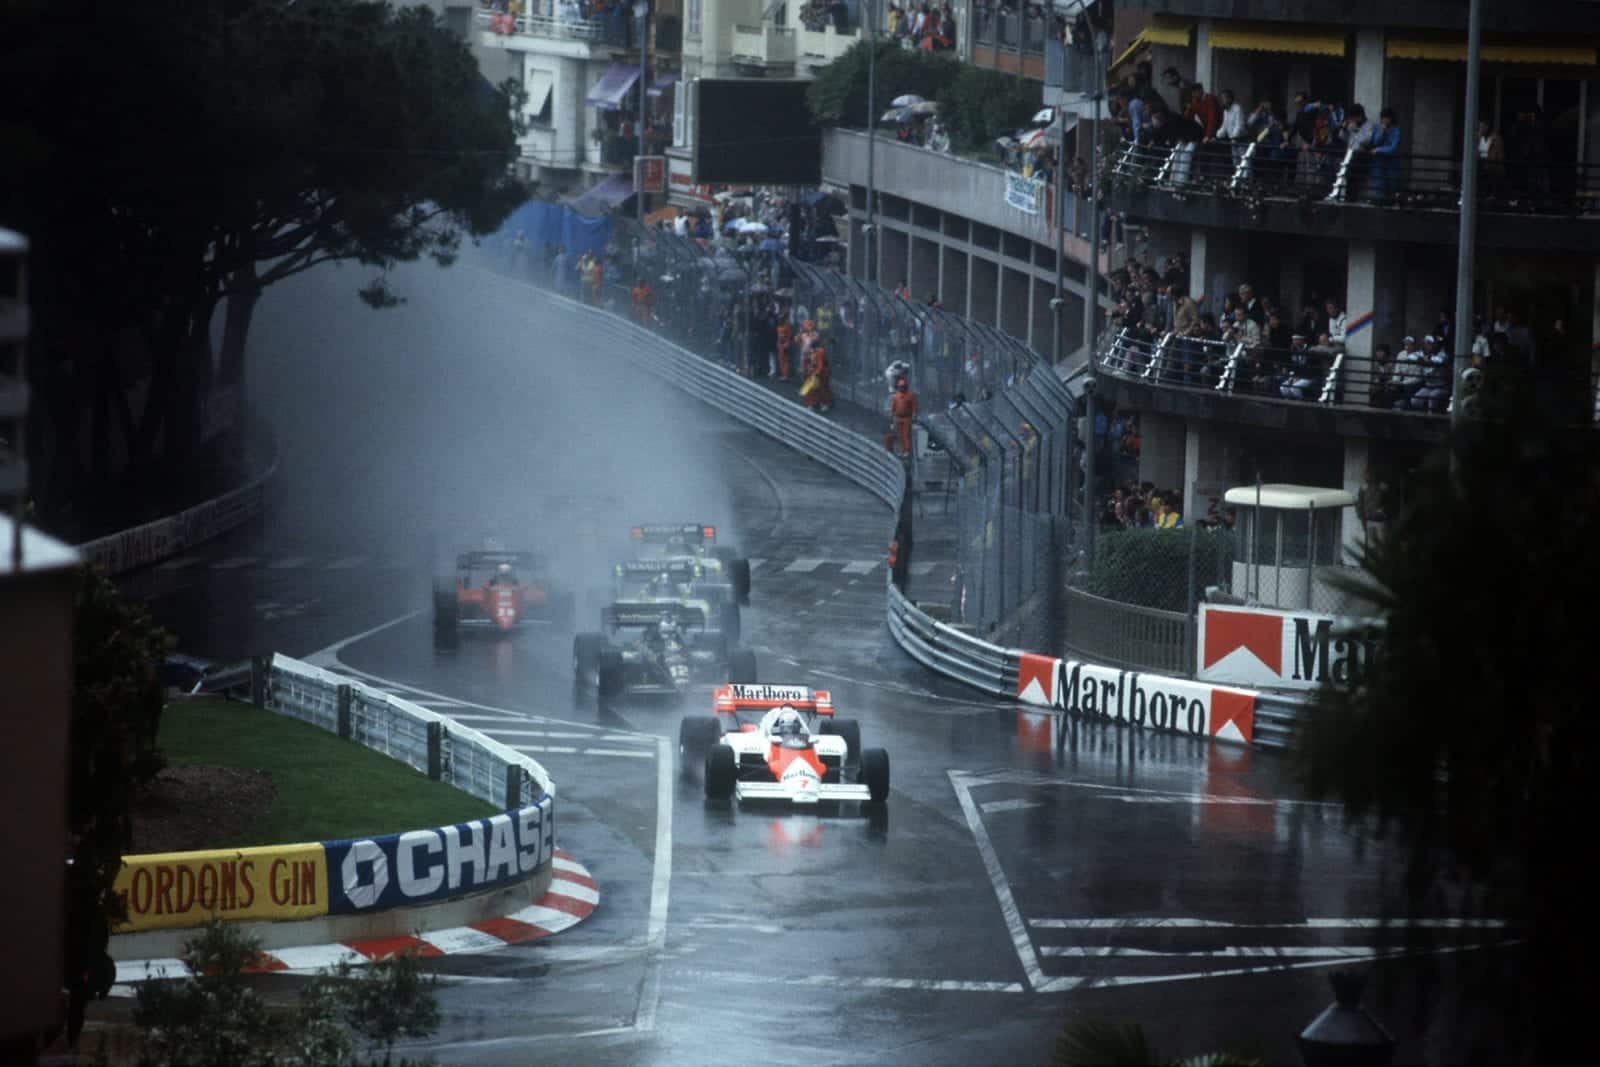 1984 Monaco Grand prix start